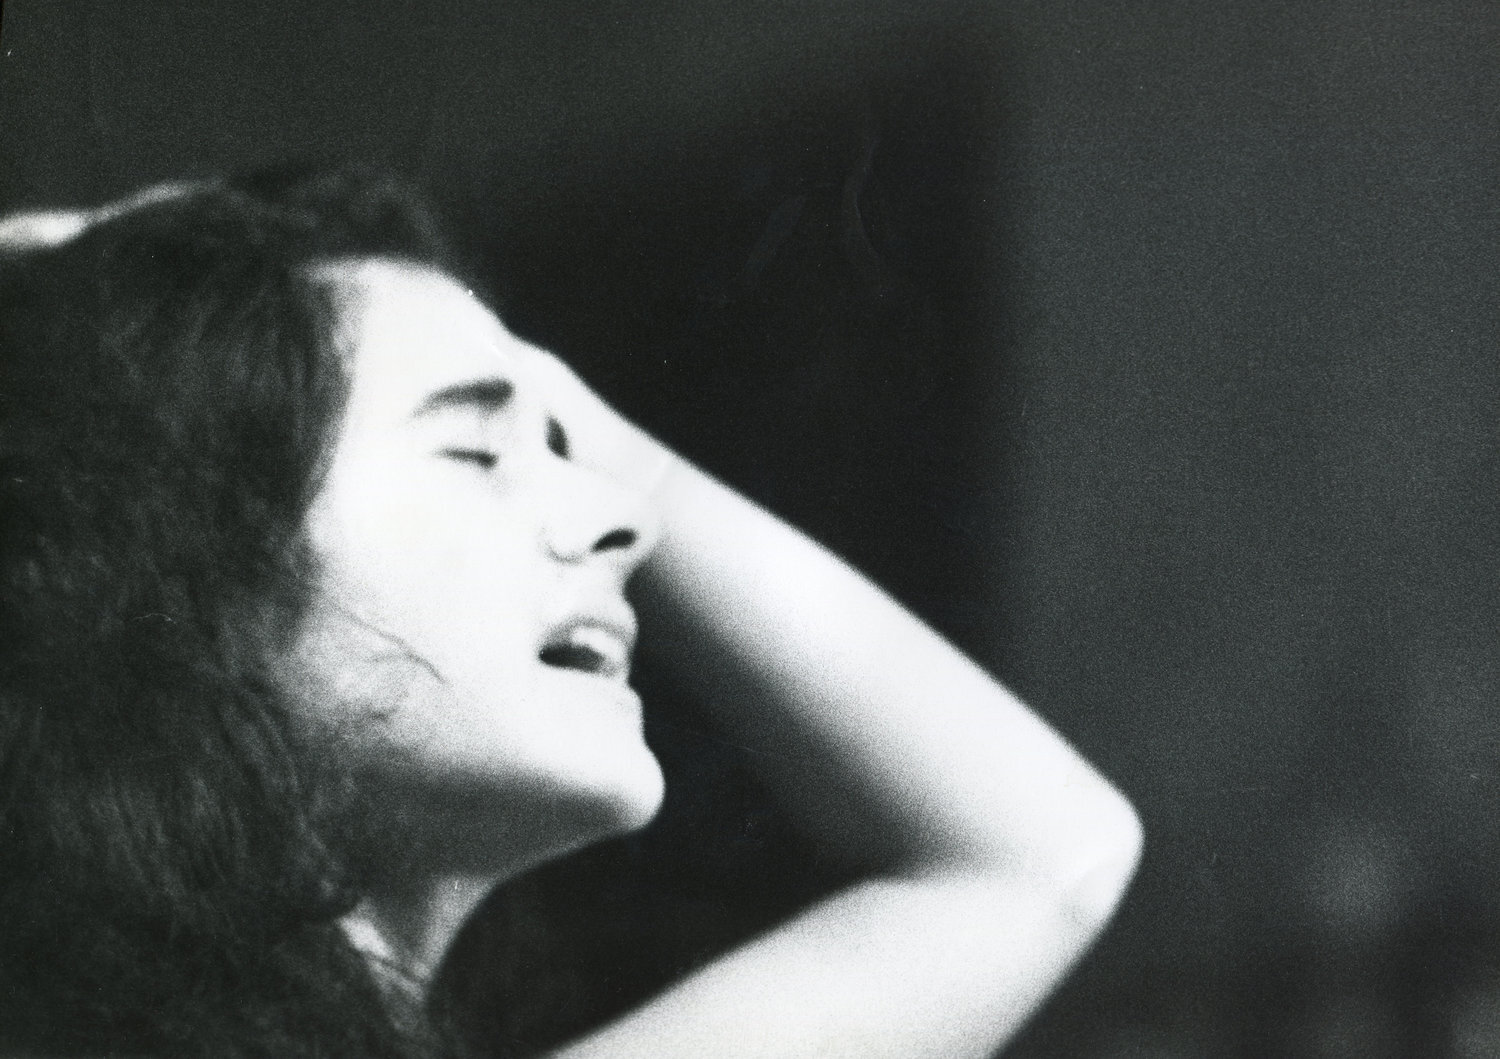  Jana Haimsohn &amp; Don Cherry - Festival d’Automne,  Paris, 1979 -  © J.L. Manaud 